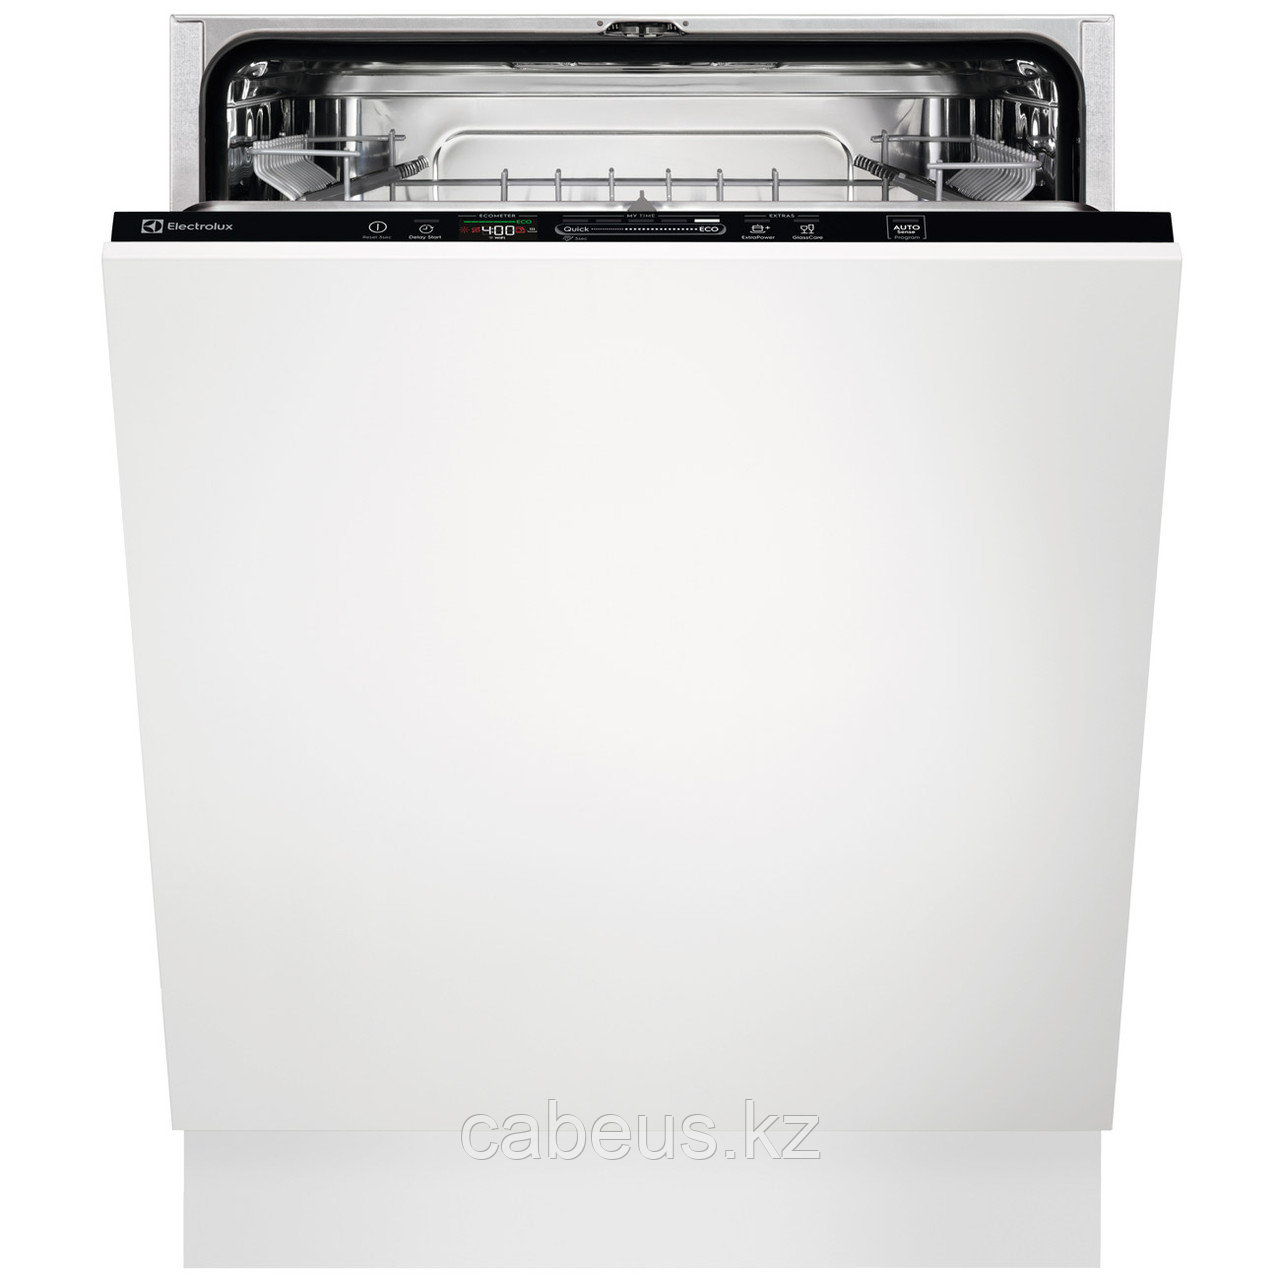 Встраиваемая посудомоечная машина 60 см Electrolux Intuit 600 EEQ947200L